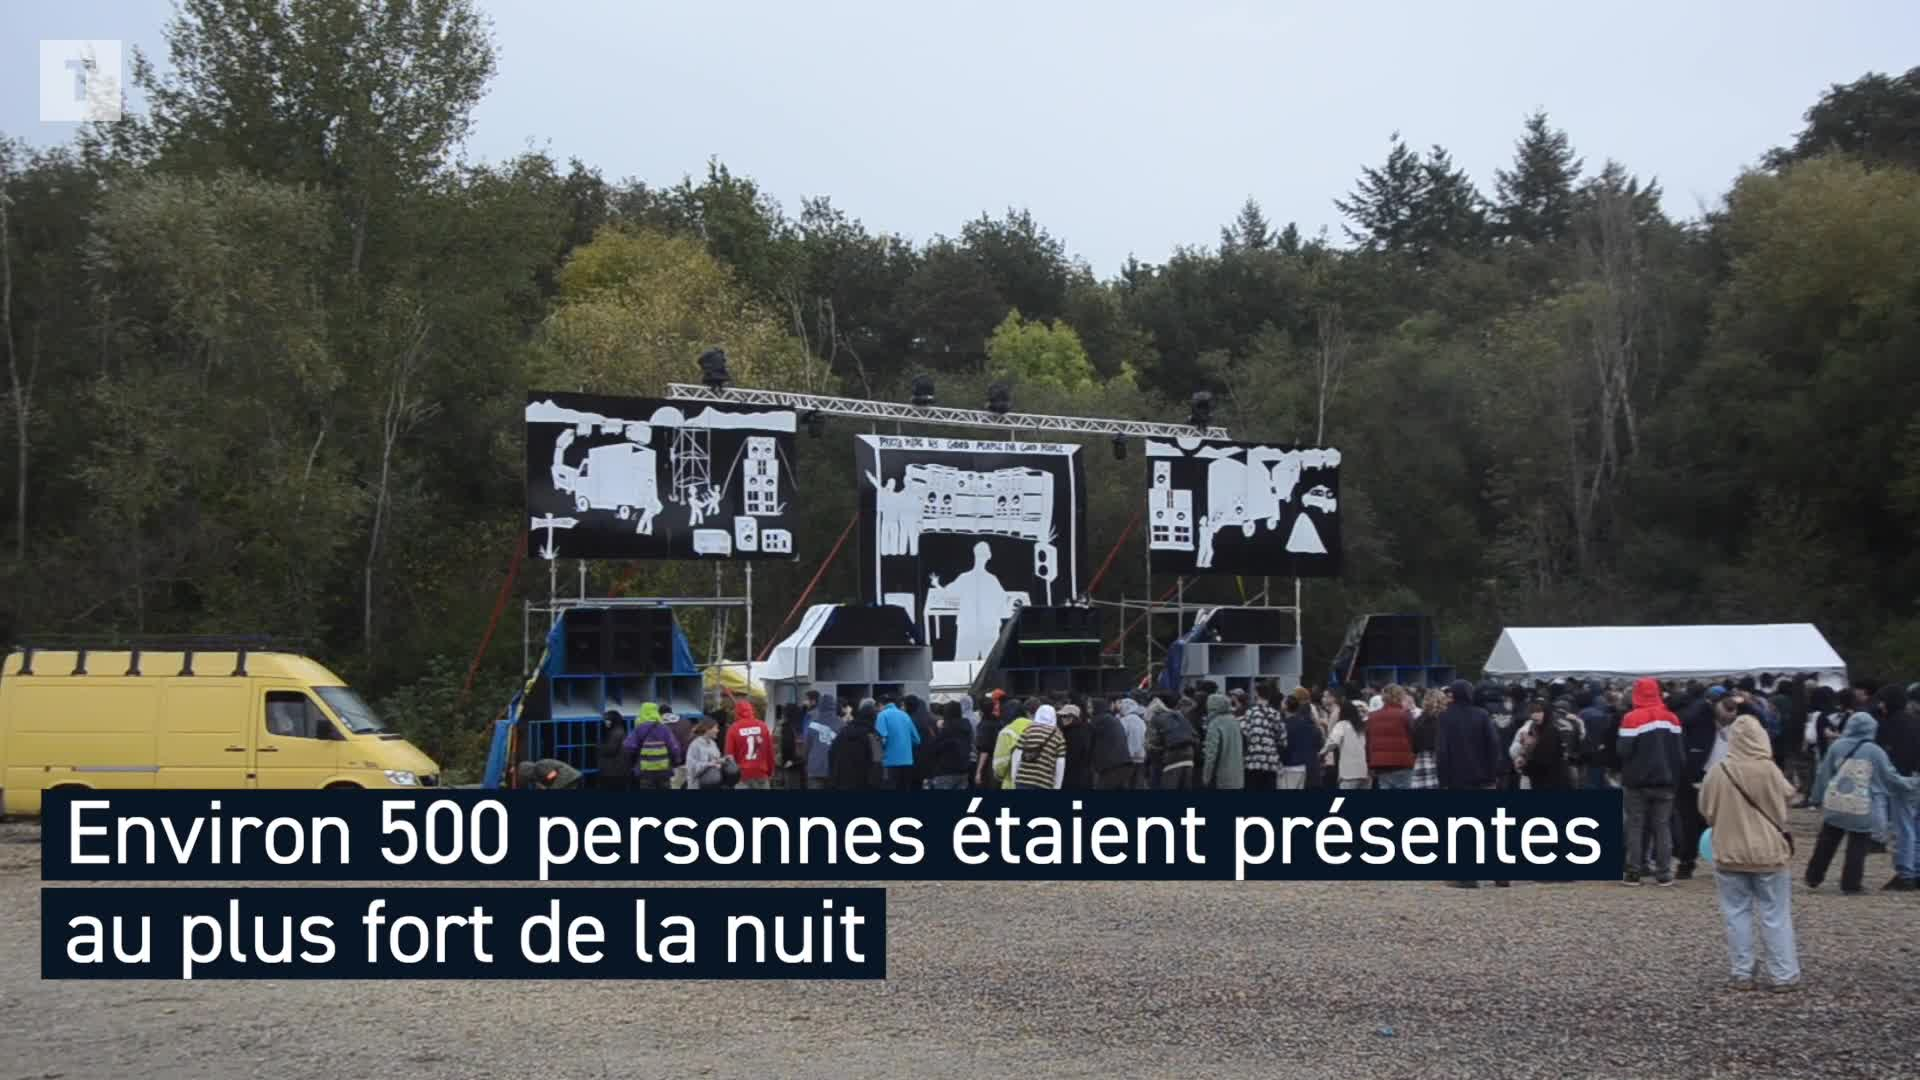 À Saint-Jacques-de-la-Lande une rave party rassemble environ 500 personnes (Le Télégramme)